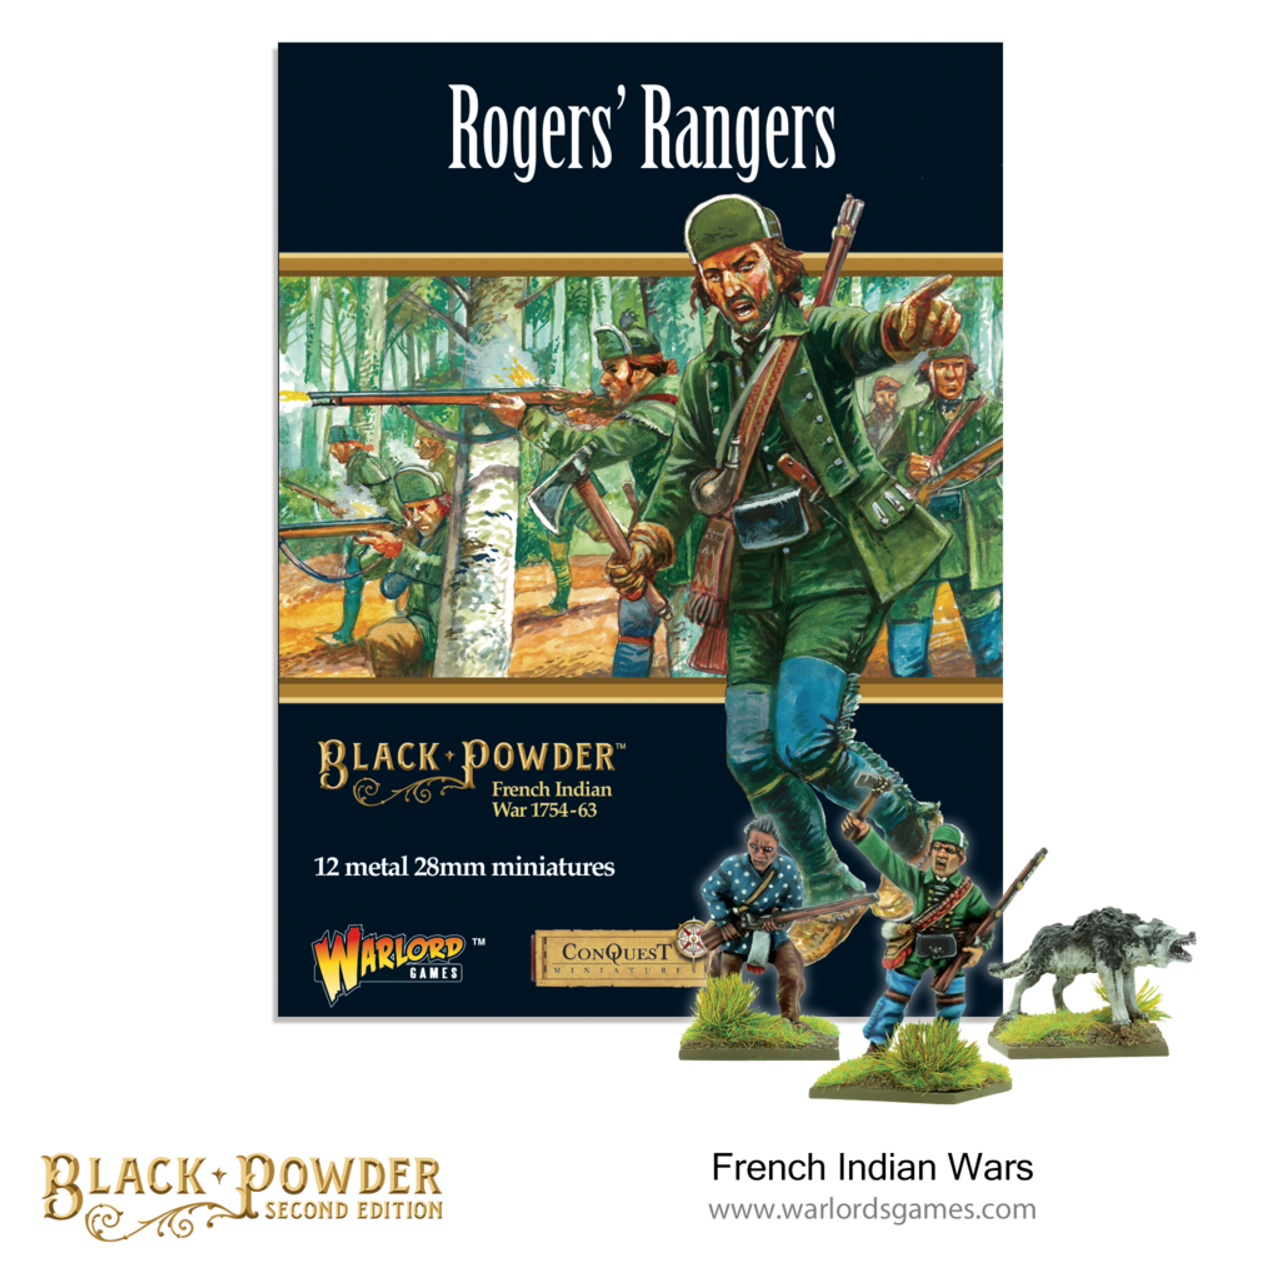 Rogers Ranger